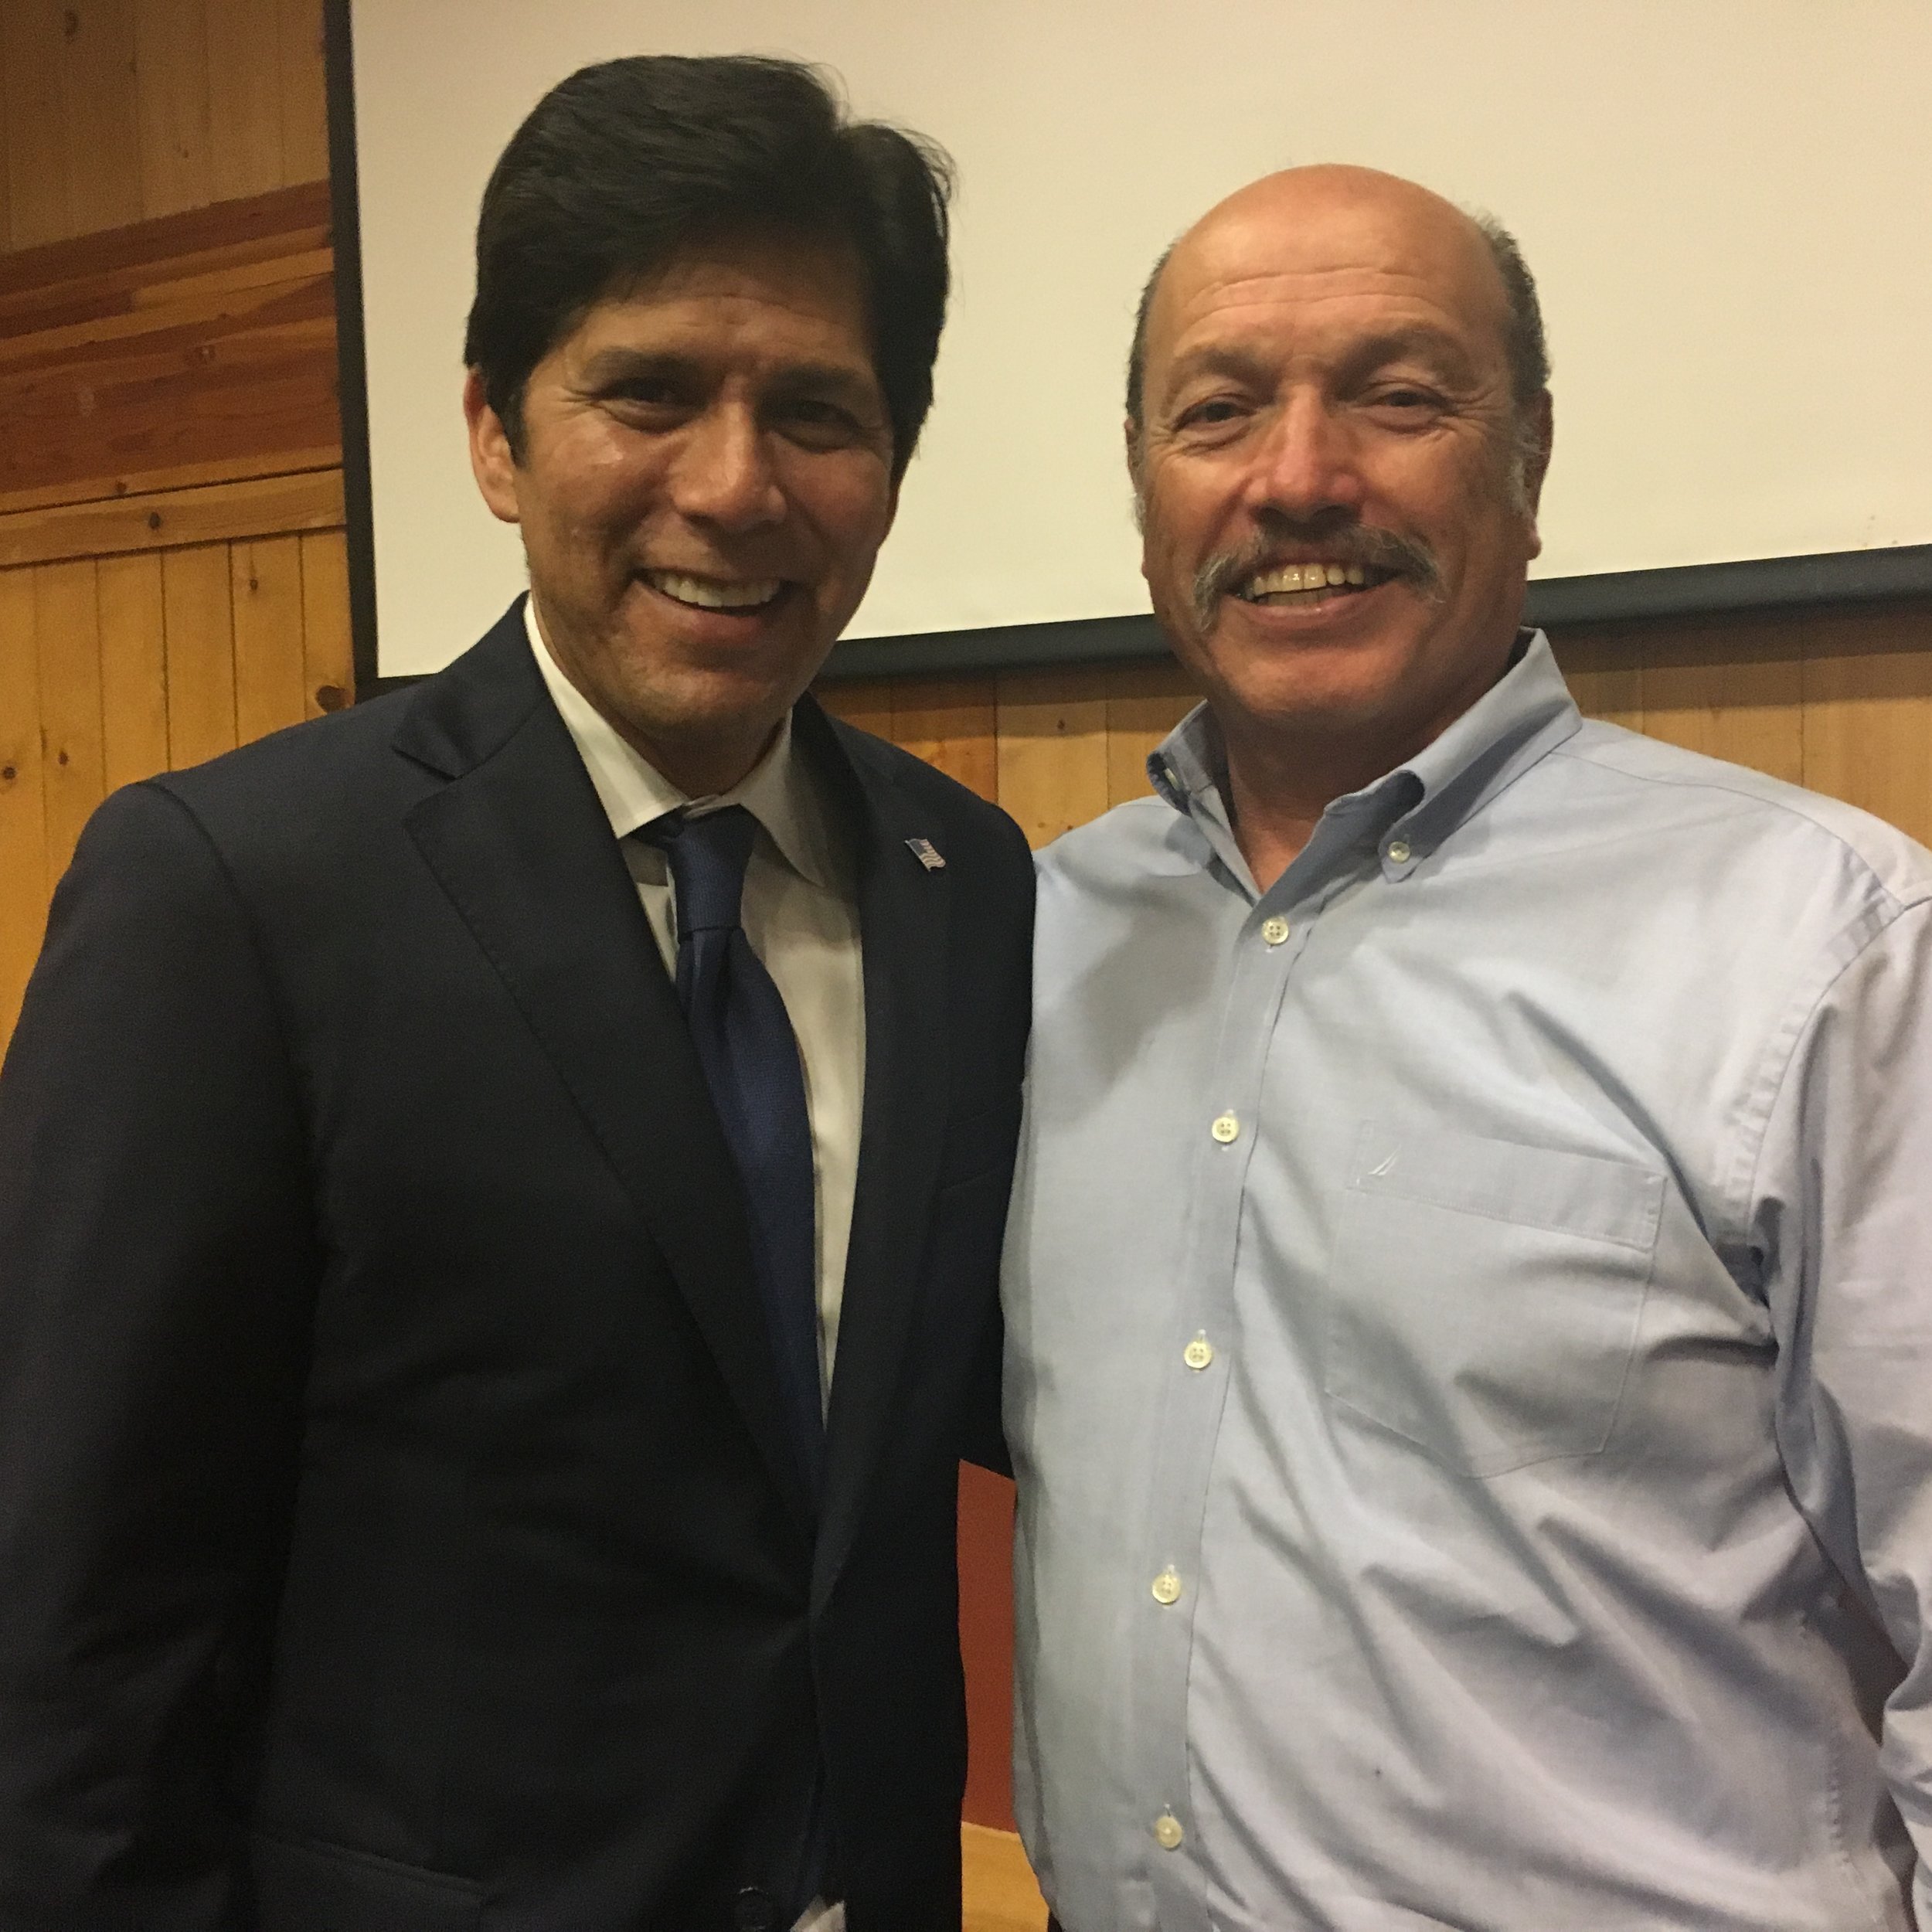 Tony with President pro Tempore of the California State Senate Kevin de Leon